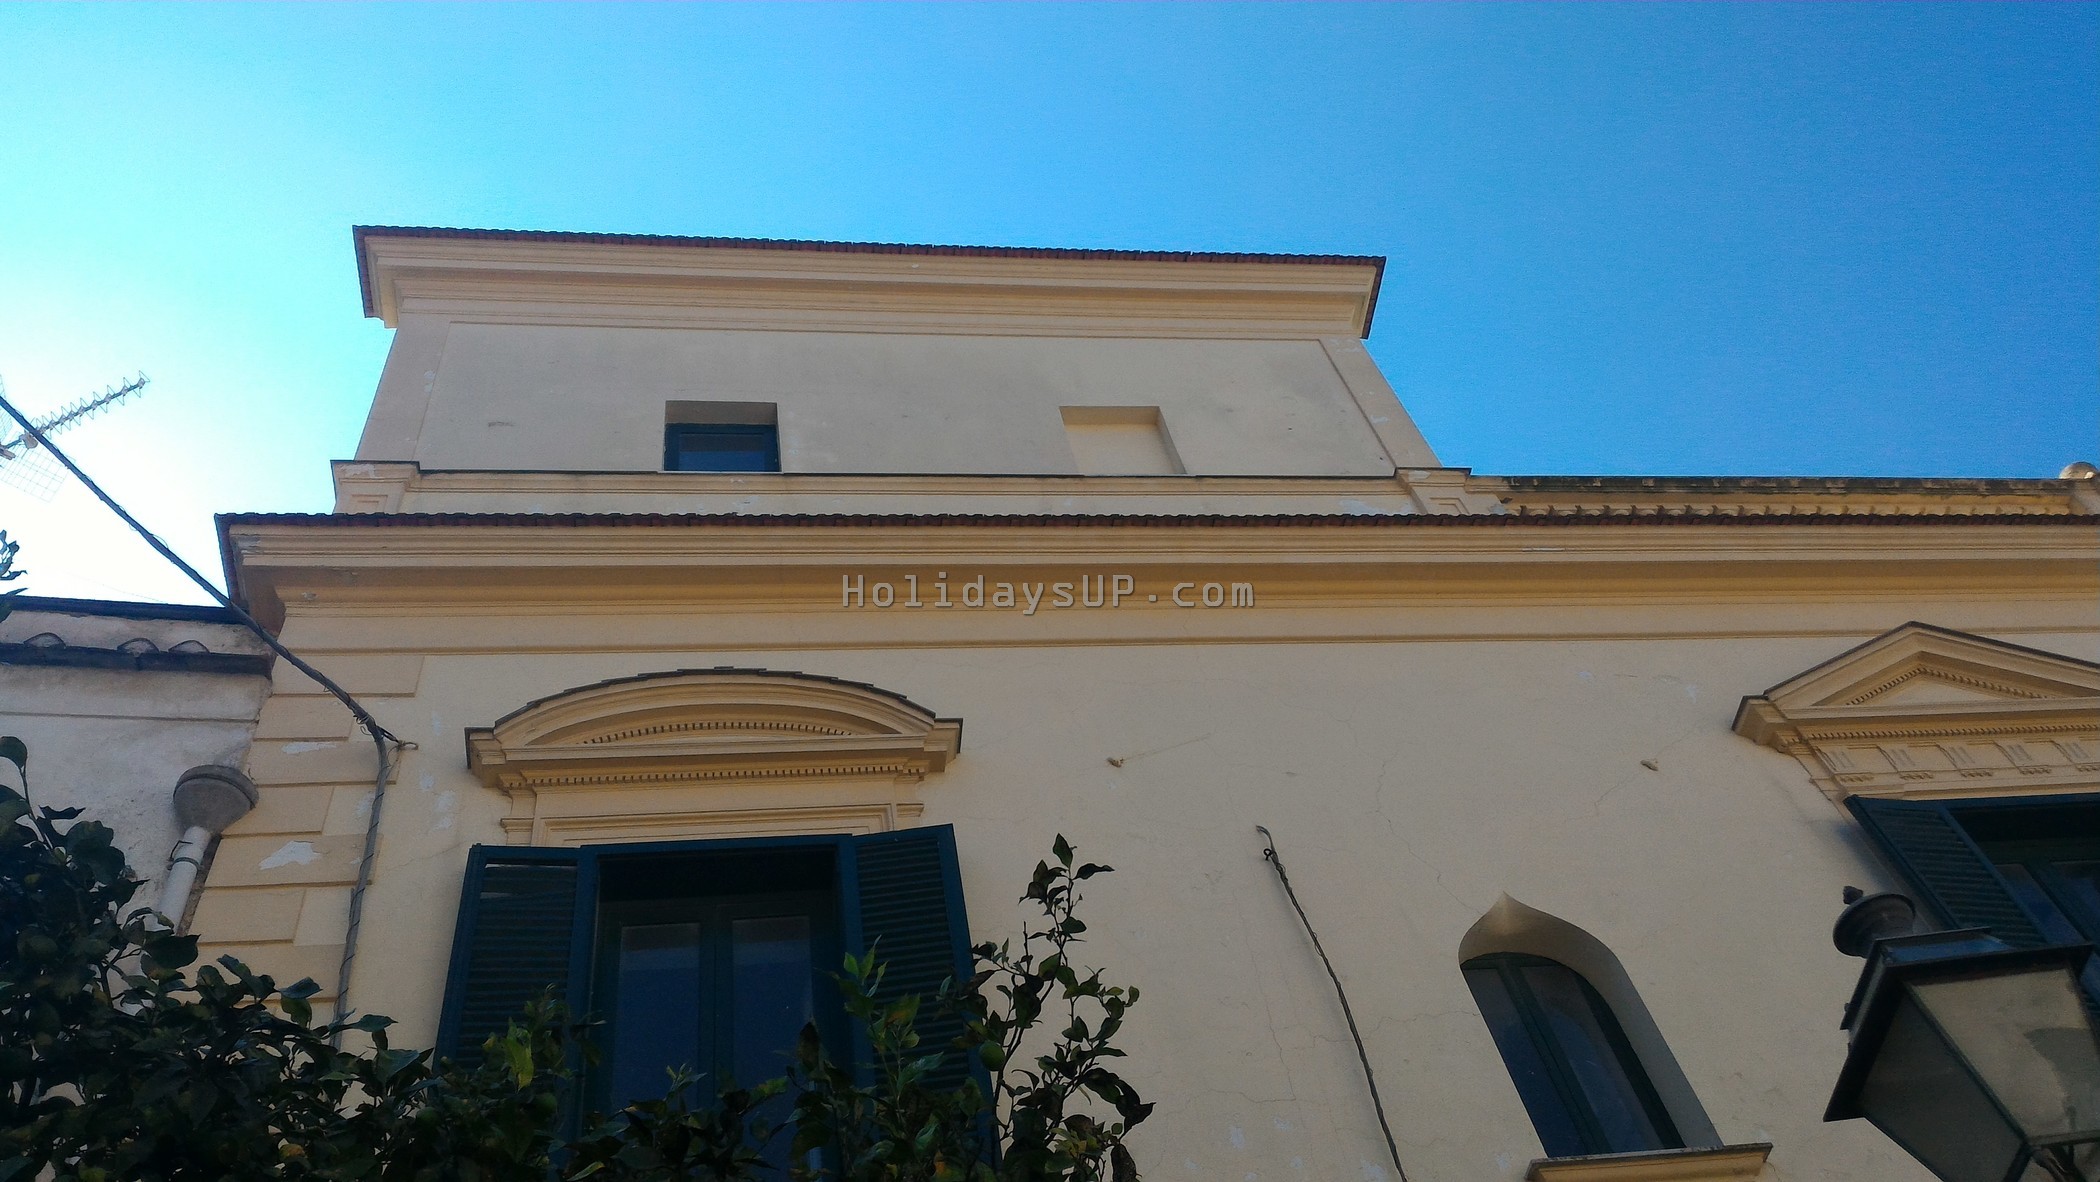 Villa Dimora Barone 18th century building in Schiazzano